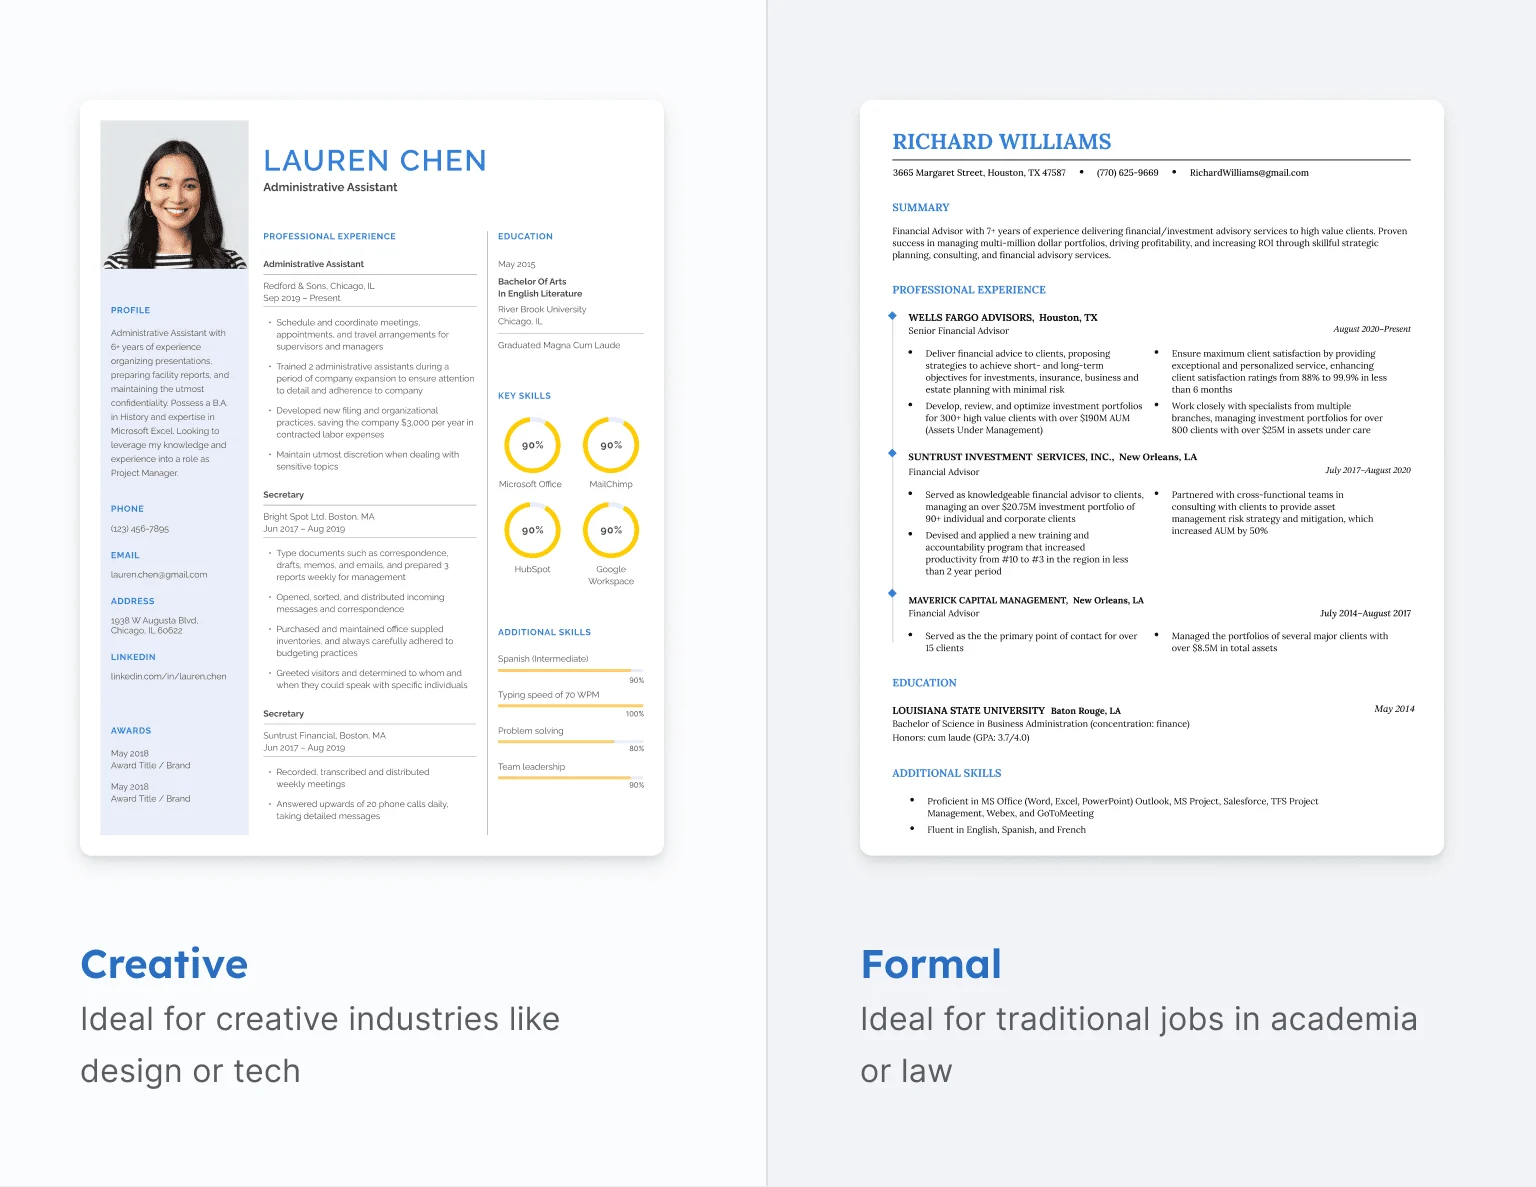 تصویری که یک CV خلاقانه را با یک عکس سر و رنگ‌های روشن با یک CV رسمی مقایسه می‌کند که ساده و مینیمالیستی به نظر می‌رسد.